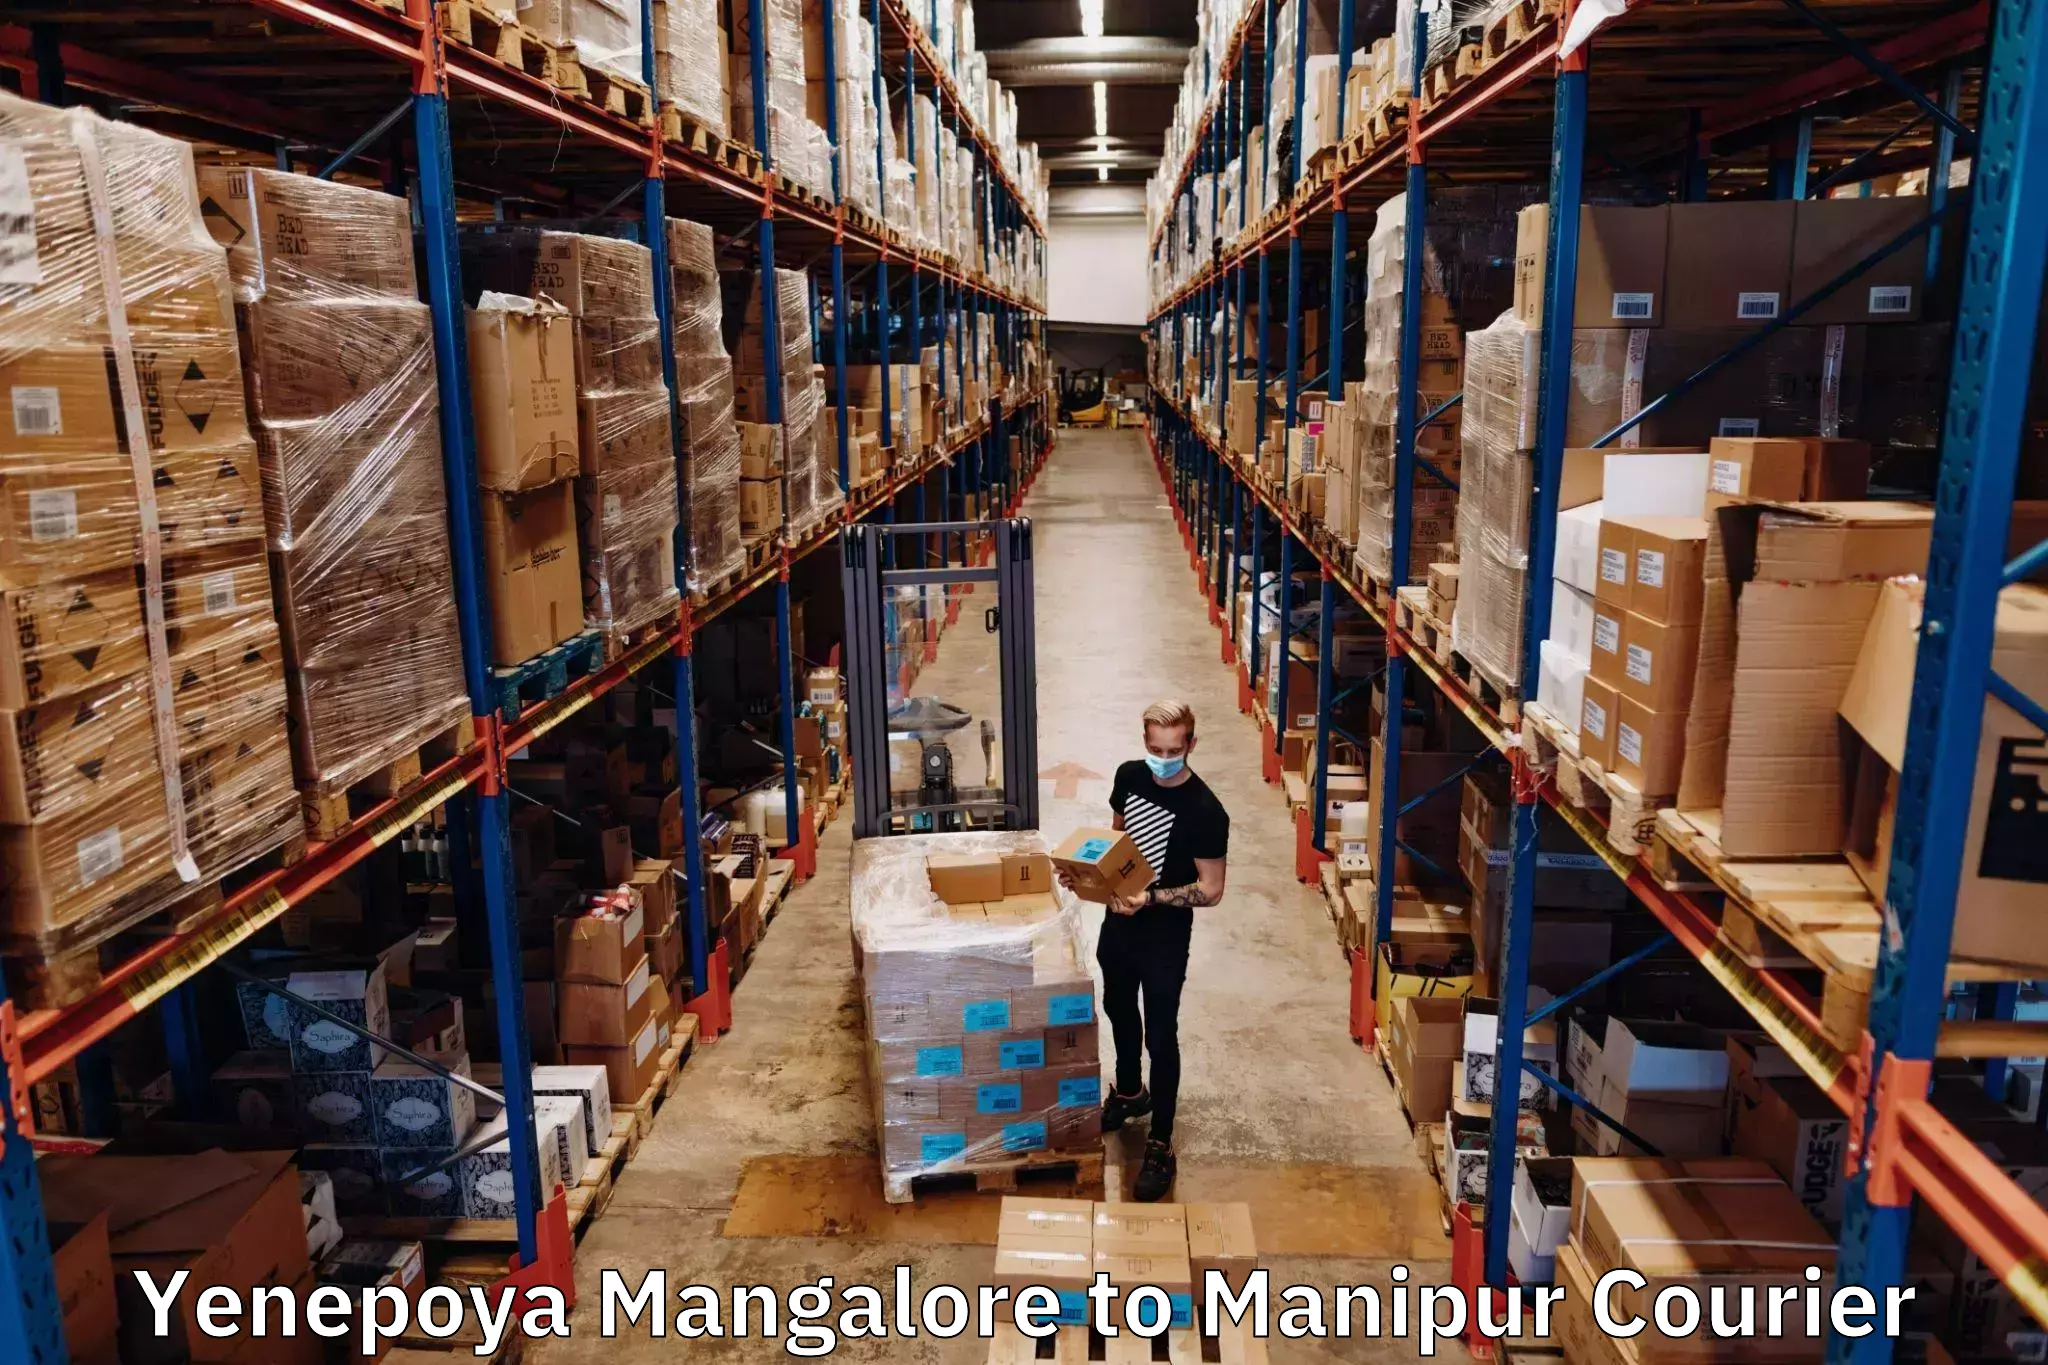 Courier service innovation Yenepoya Mangalore to Ukhrul